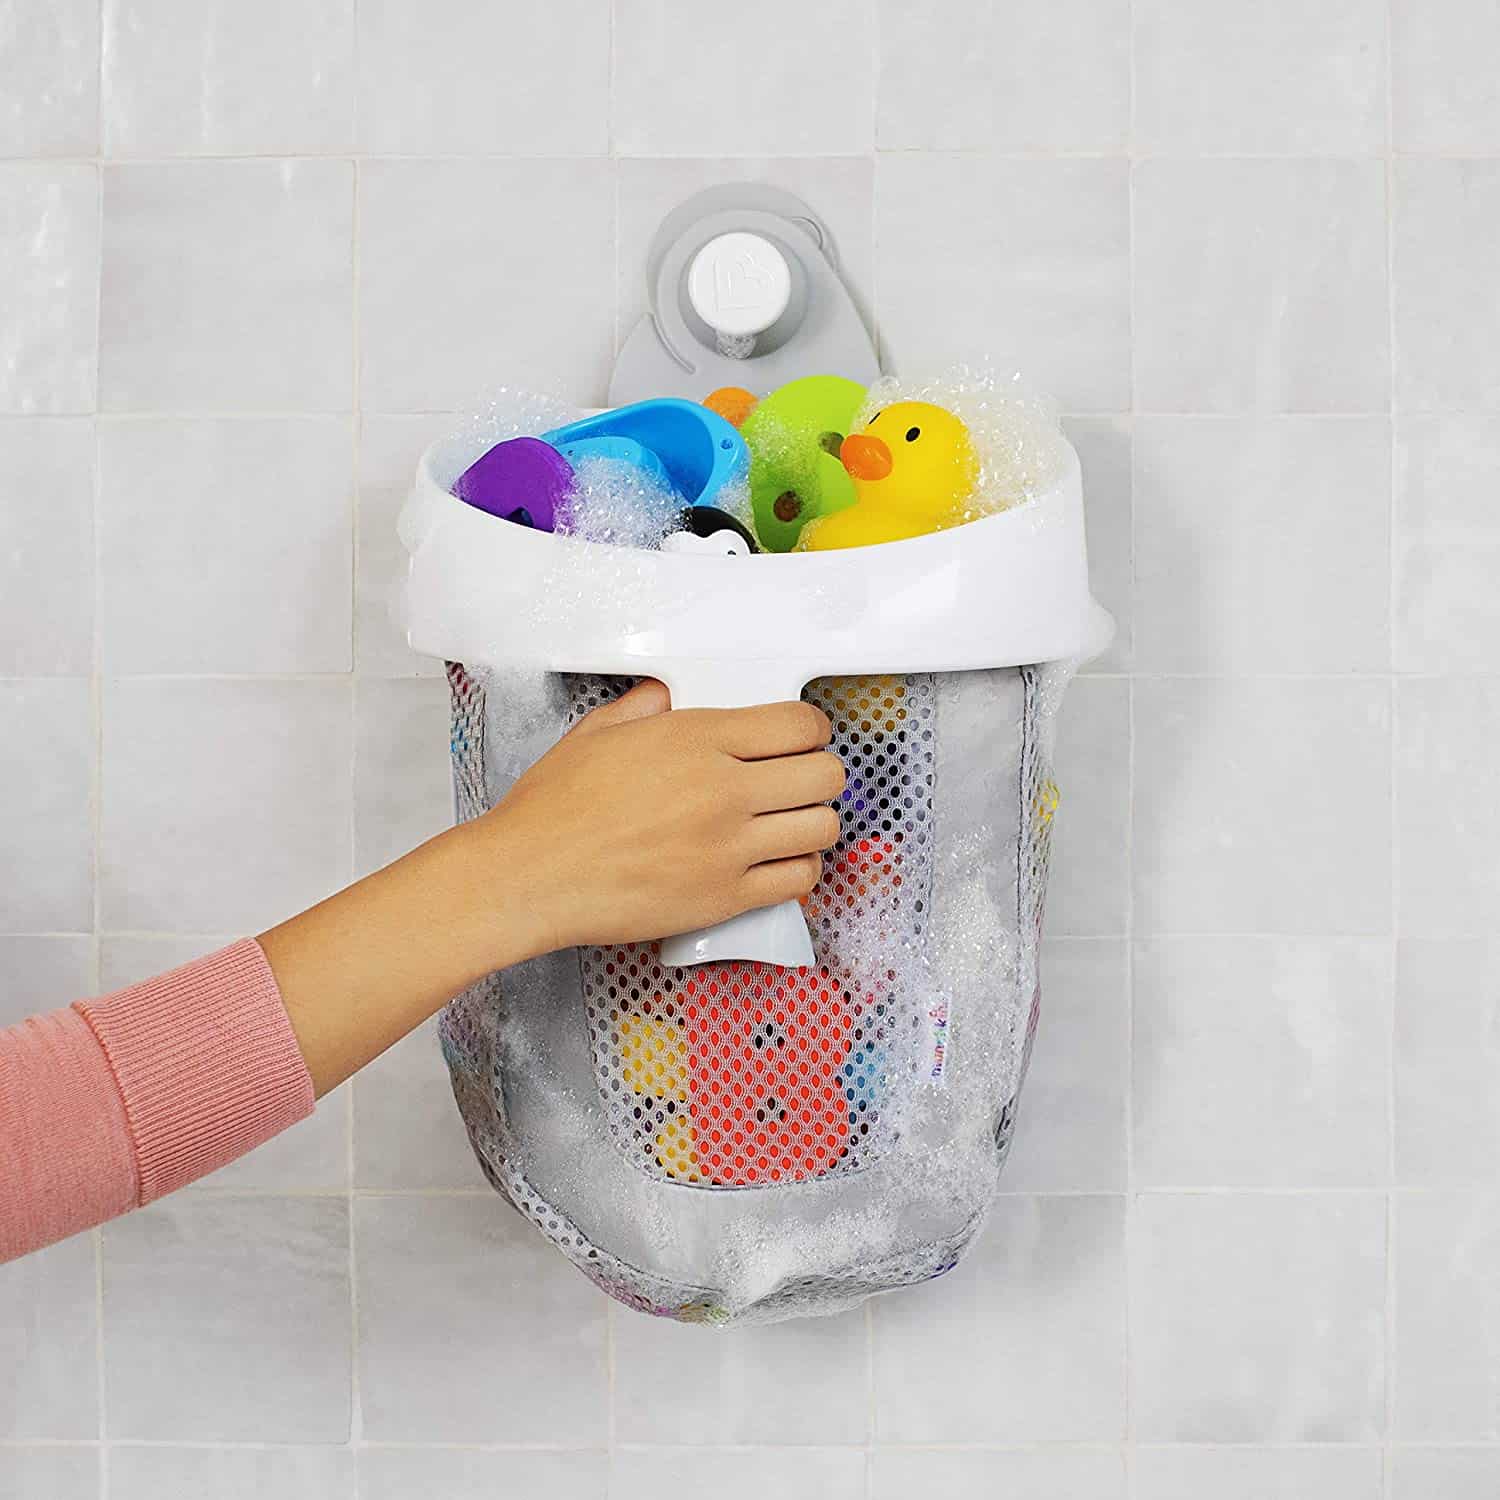 Clean Up Bath Toys: Munchkin bath toy scoop